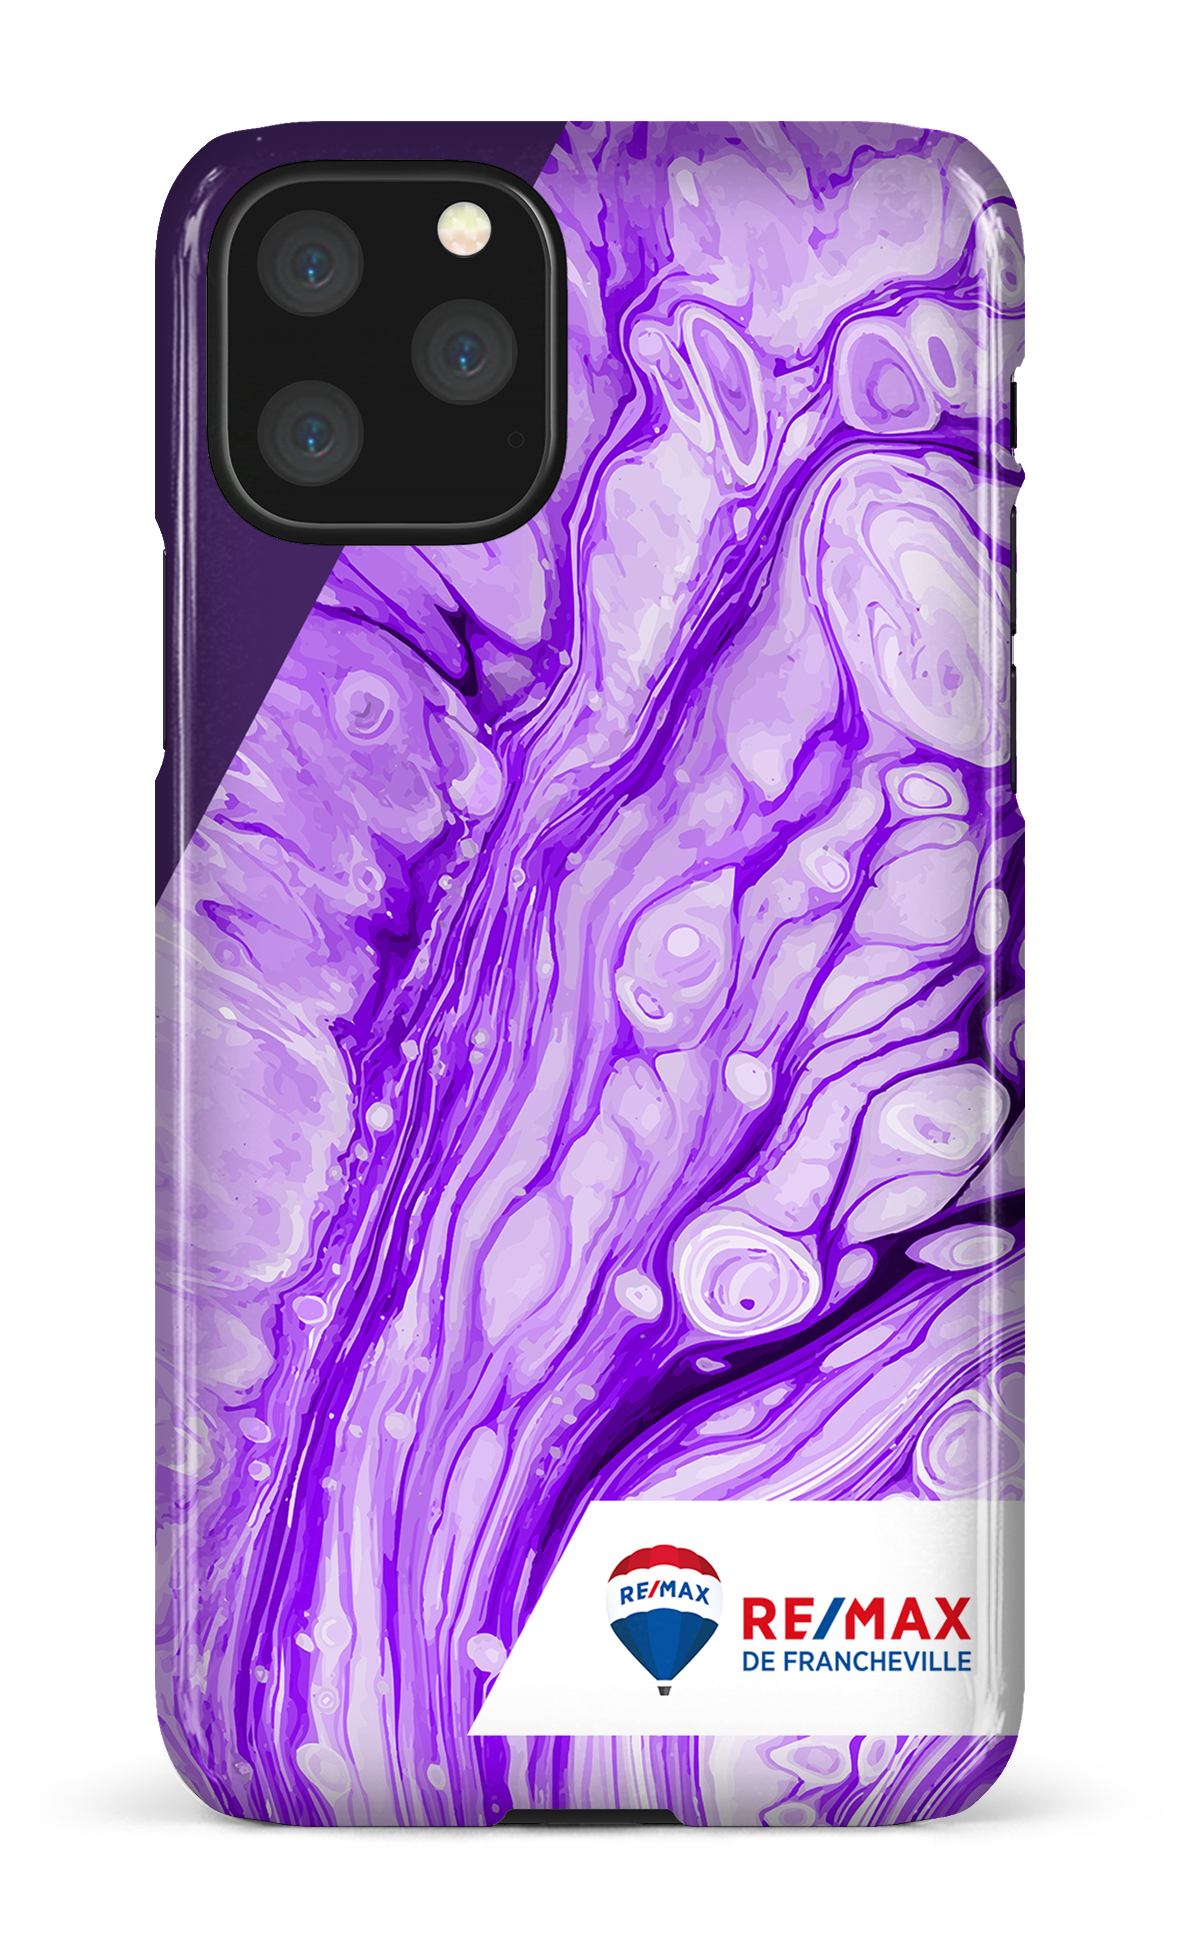 Peinture marbrée claire violette de Francheville - iPhone 11 Pro